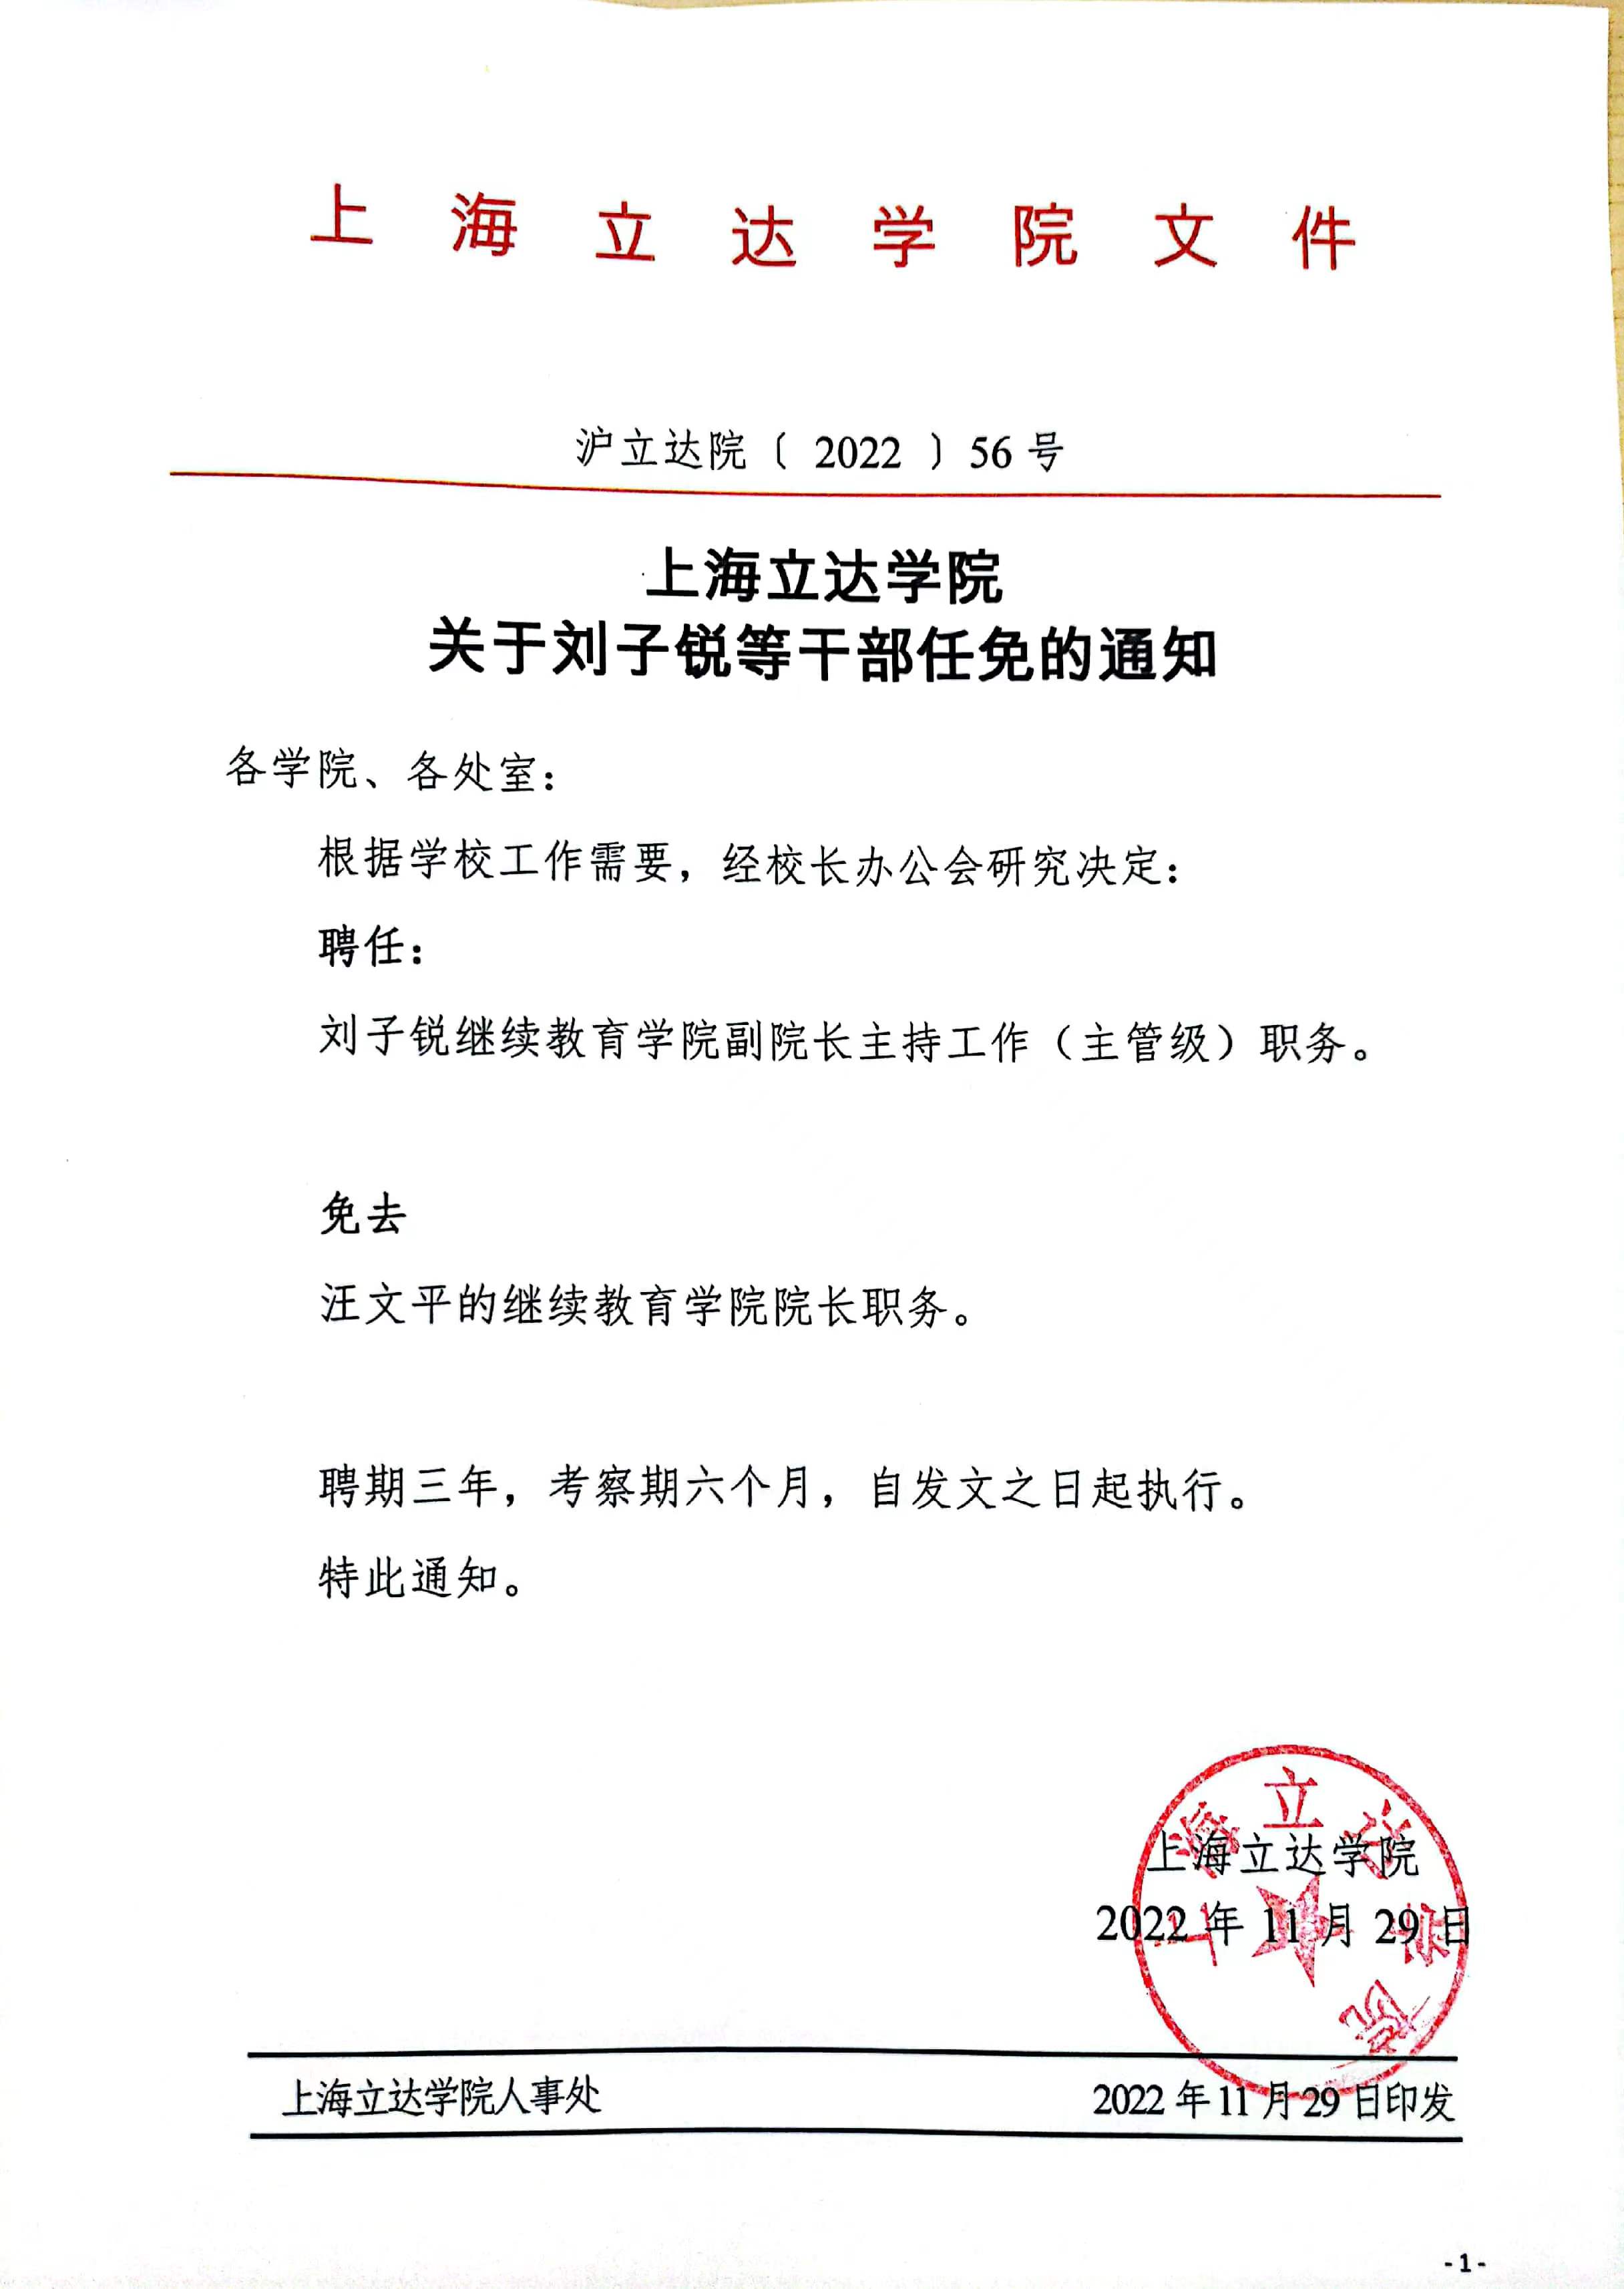 上海立达学院关于刘子锐等干部任免的通知